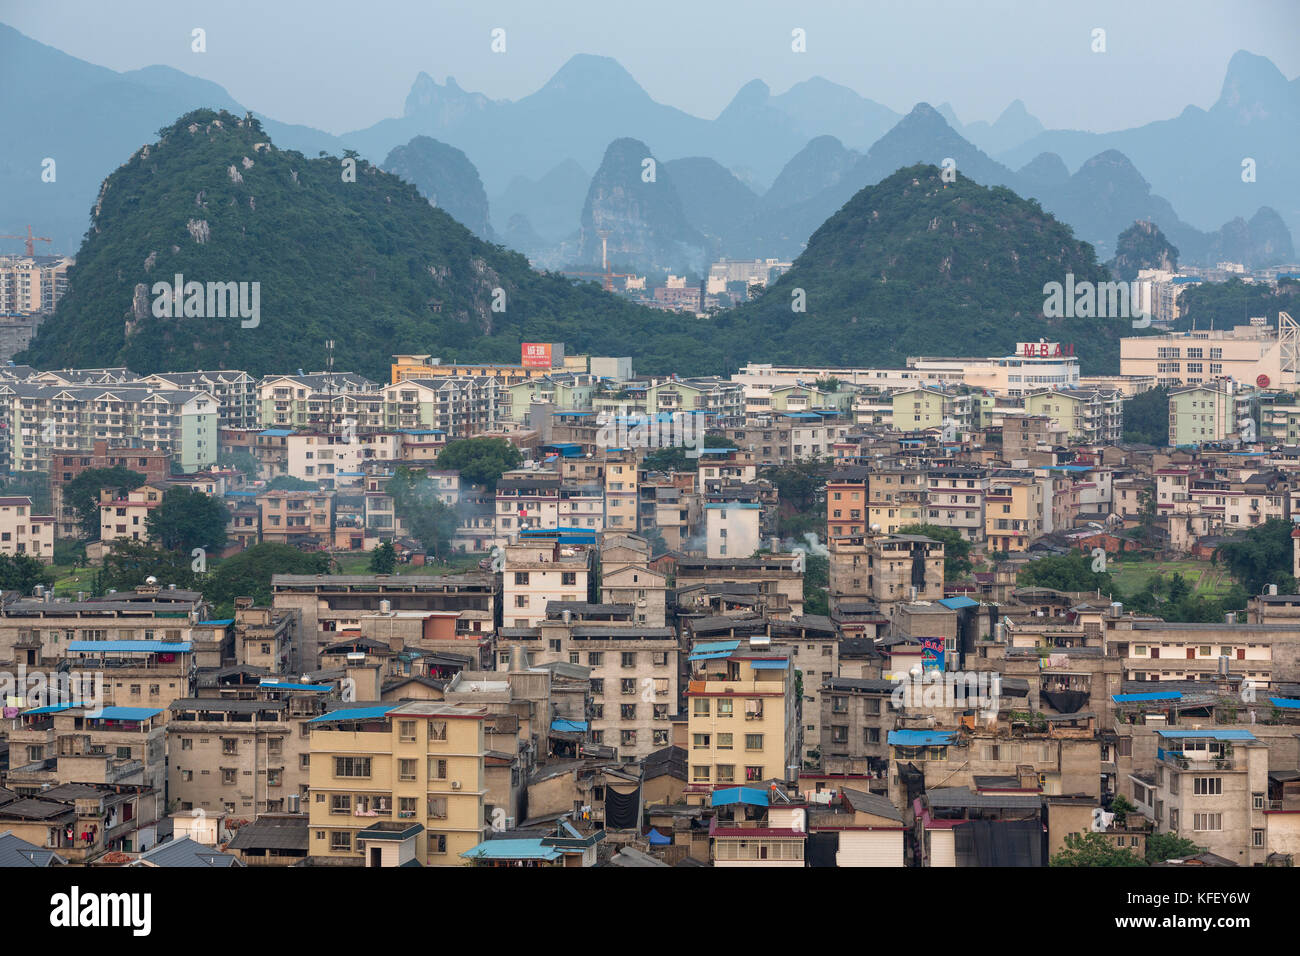 Vista superiore della città di Guilin in Guangxi Zhuang regione autonoma della Repubblica popolare cinese Foto Stock